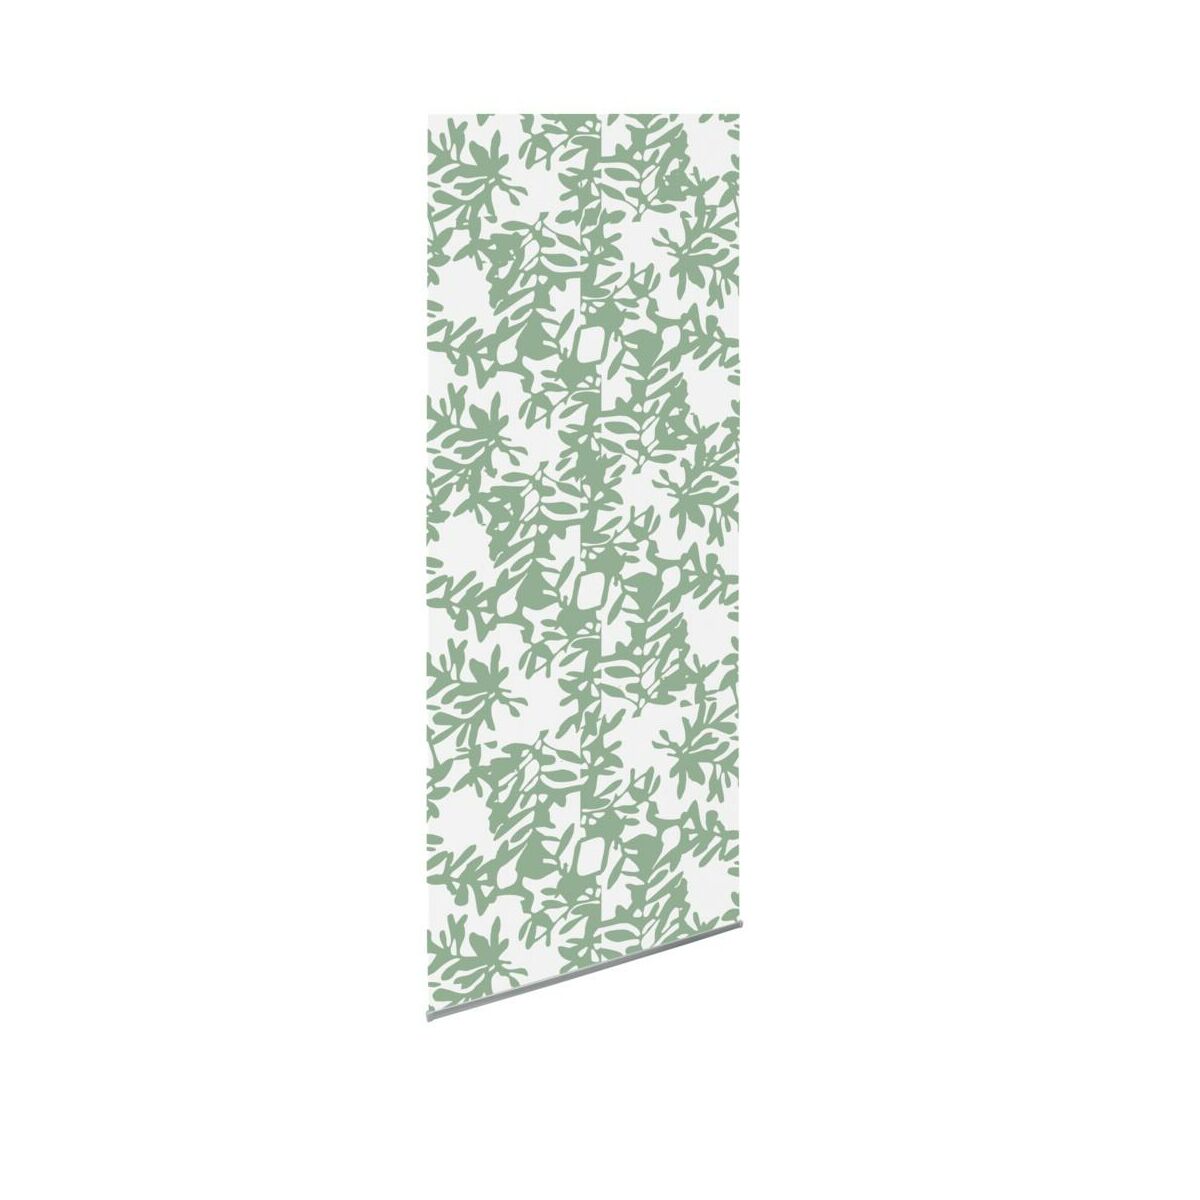 Tkanina na panel japoński Kwiecie zielona 60 x 275 cm